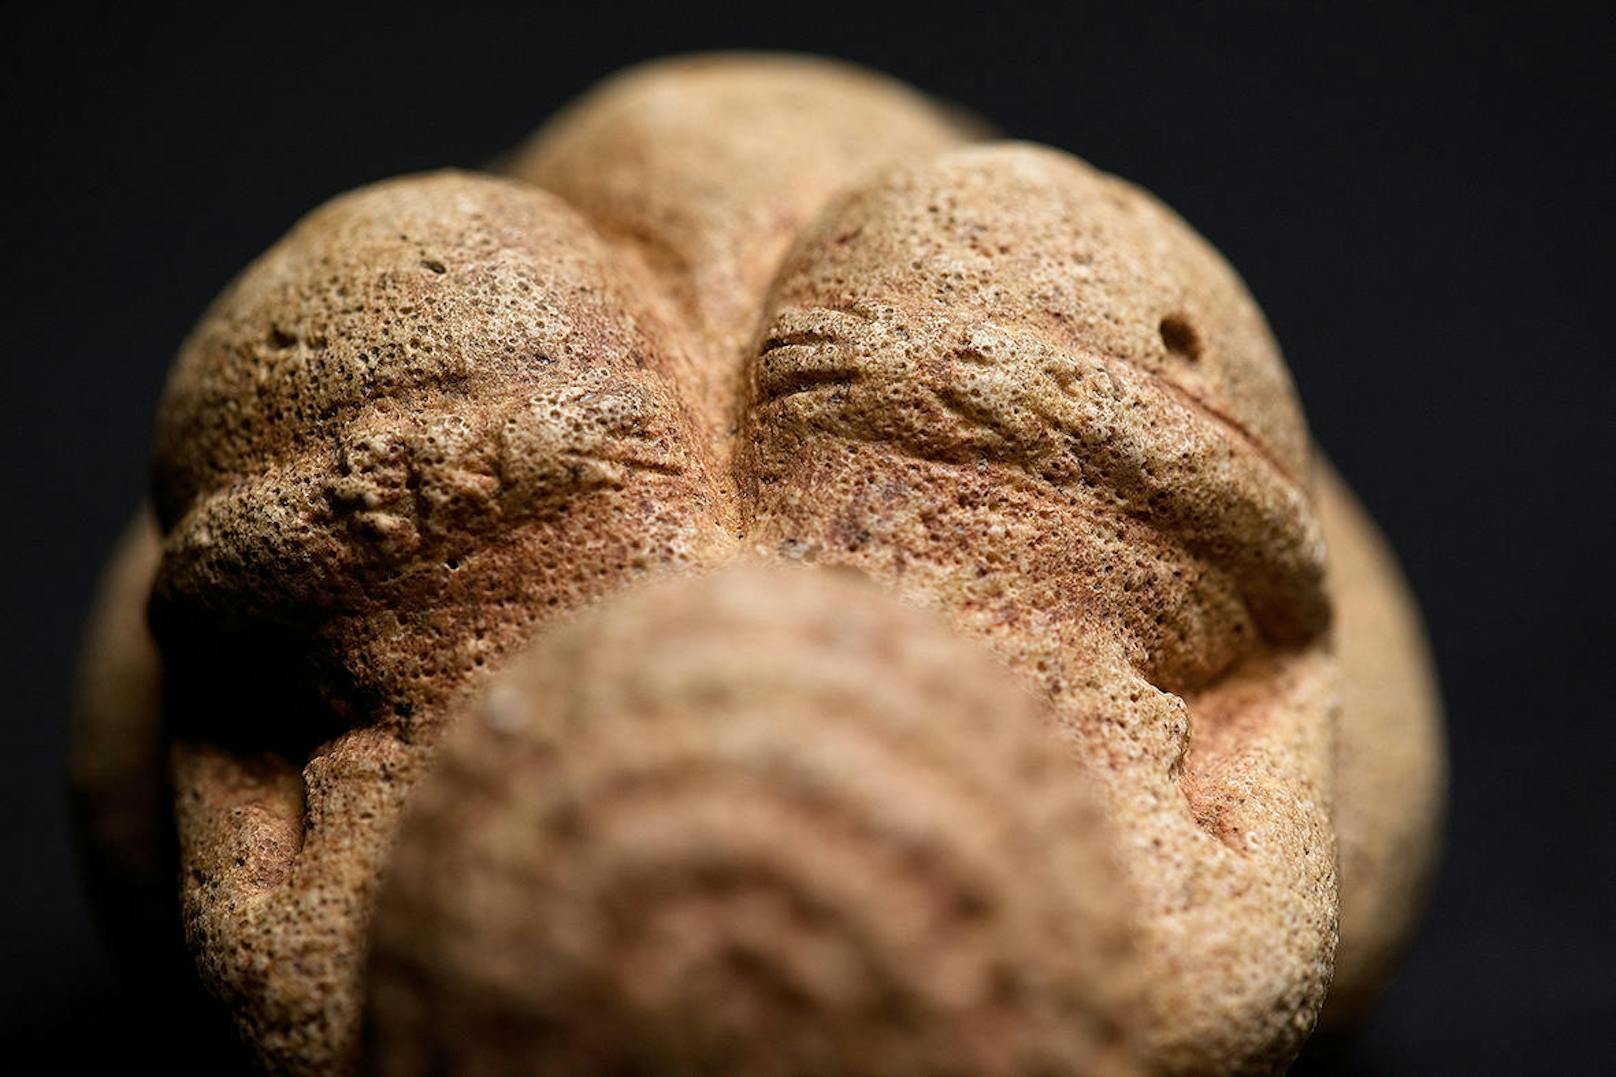 Aber auch in der Menschheitsgeschichte. Dabei zeigt sich, dass erotische Darstellungen schon im Jungpaläolithikum beliebt waren, wie die berühmte Venus von Willendorf beweist. (c) NHM Wien